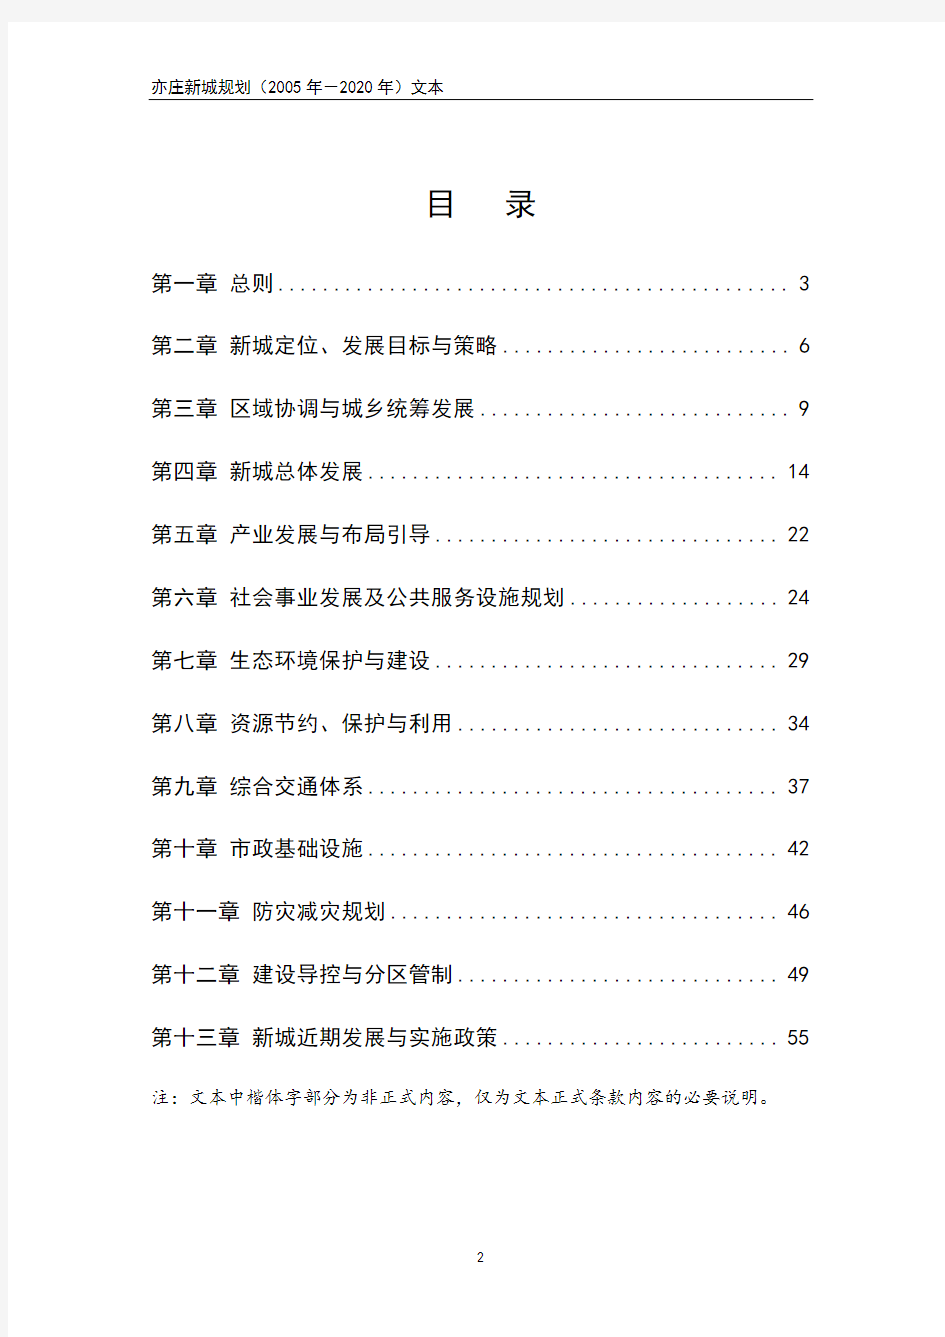 亦庄新城规划(2005年-2020年)文本 最完整版本